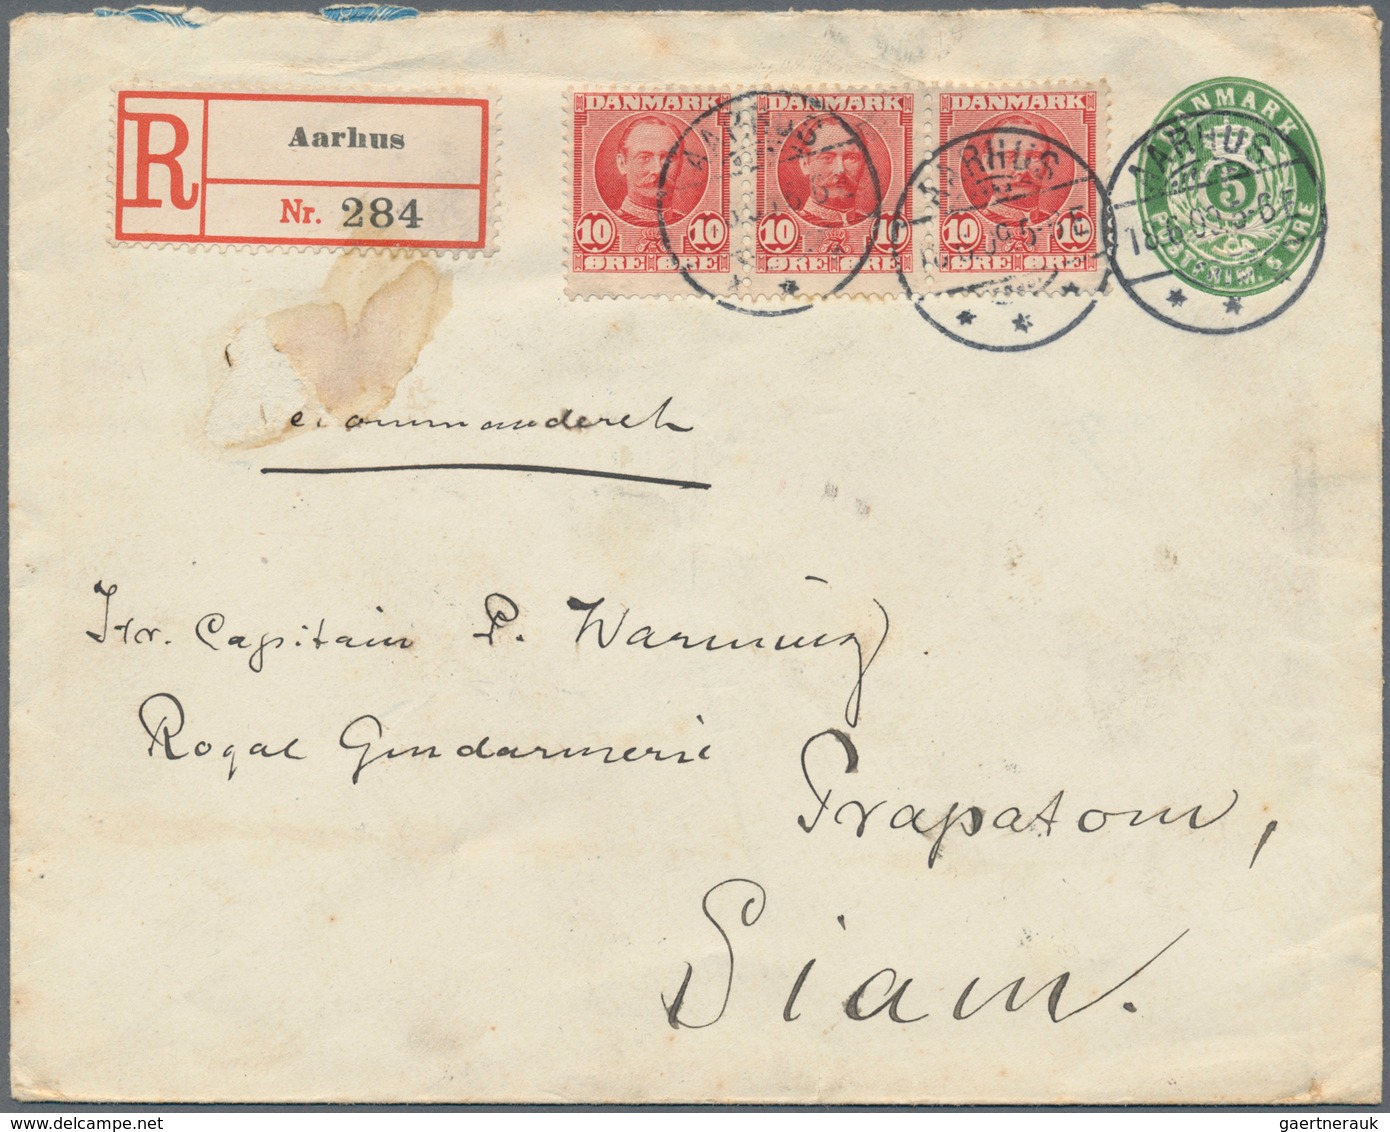 Dänemark - Ganzsachen: 1909 Destination SIAM: Postal Stationery Envelope 5 øre Green Used Registered - Ganzsachen